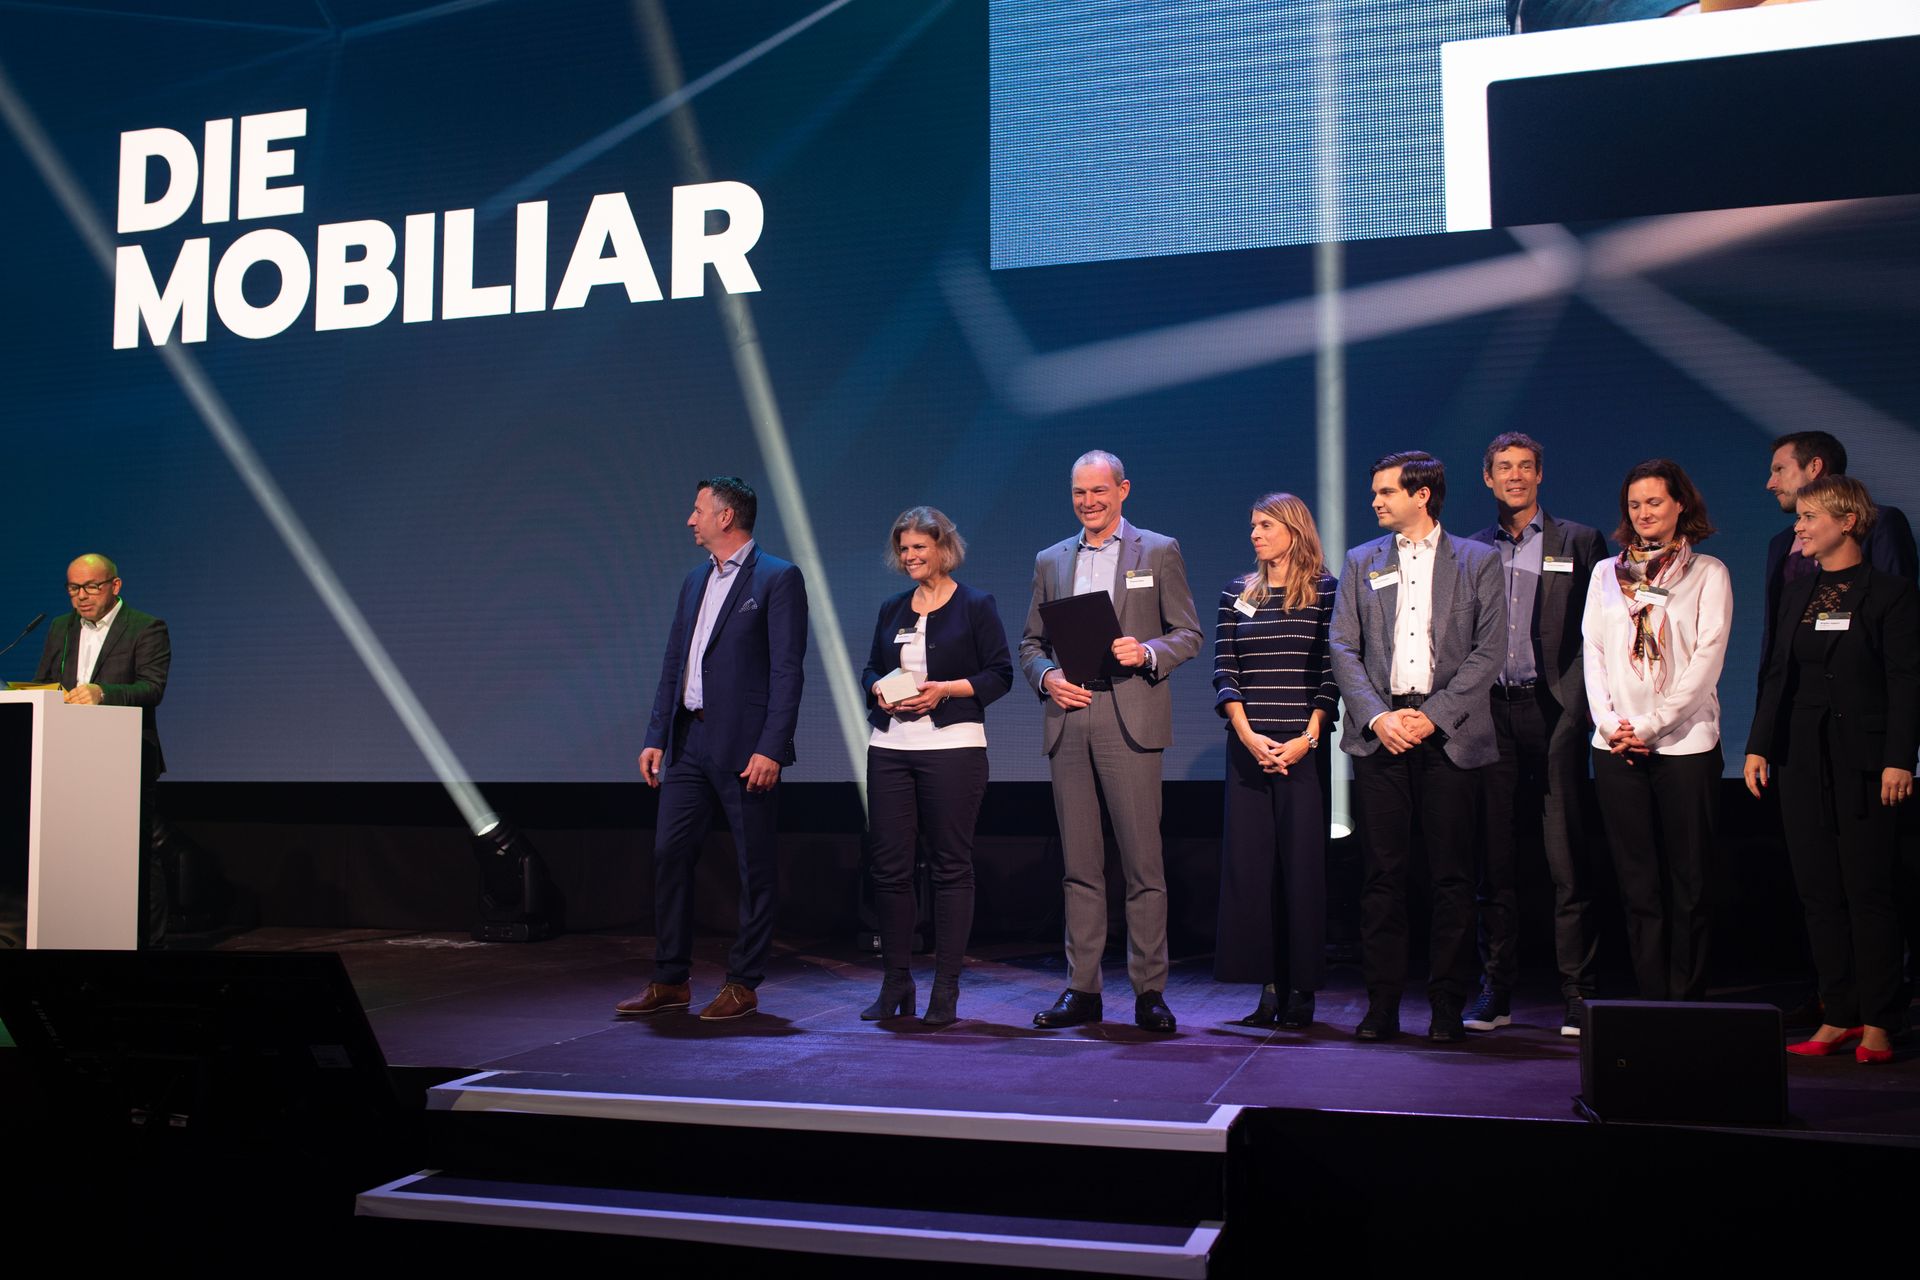 कंपनी "ला ​​मोबिलियारे" को स्विस "डिजिटल इकोनॉमी अवार्ड" में "डिजिटल उत्कृष्टता पीएमआई" पुरस्कार से सम्मानित किया गया।